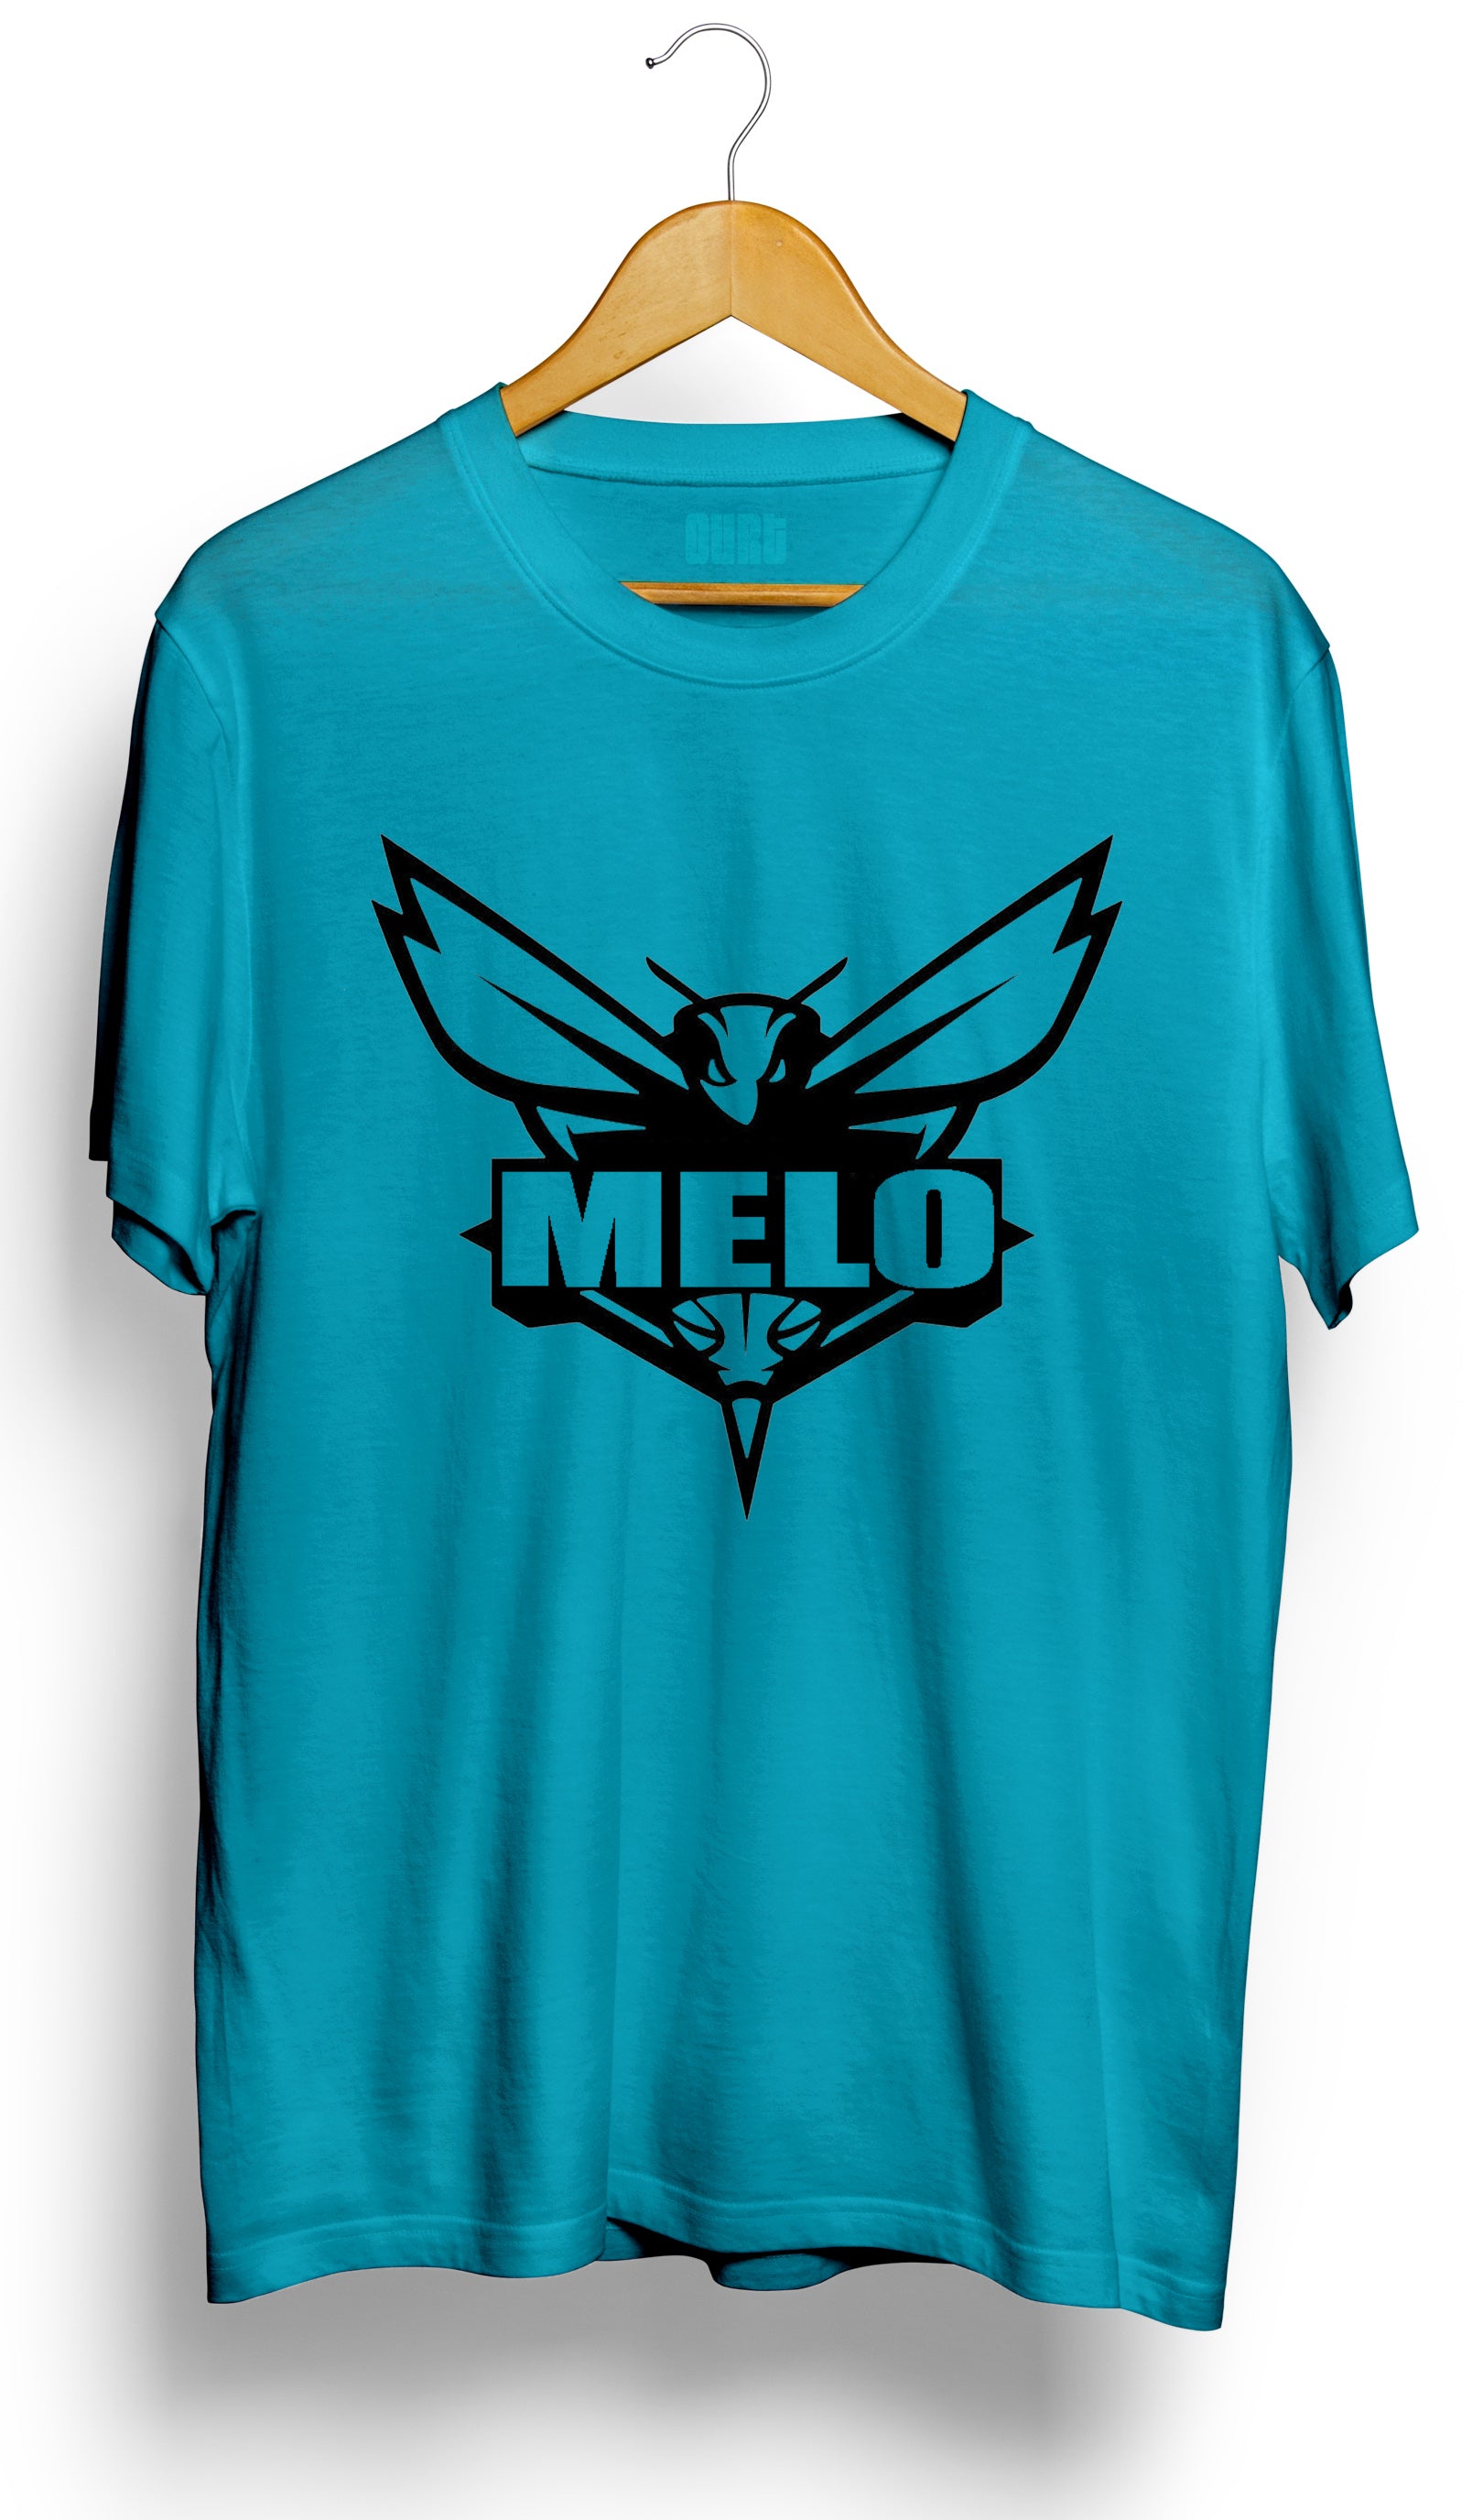 LaMelo Ball | Charlotte Hornets T-Shirt - Ourt